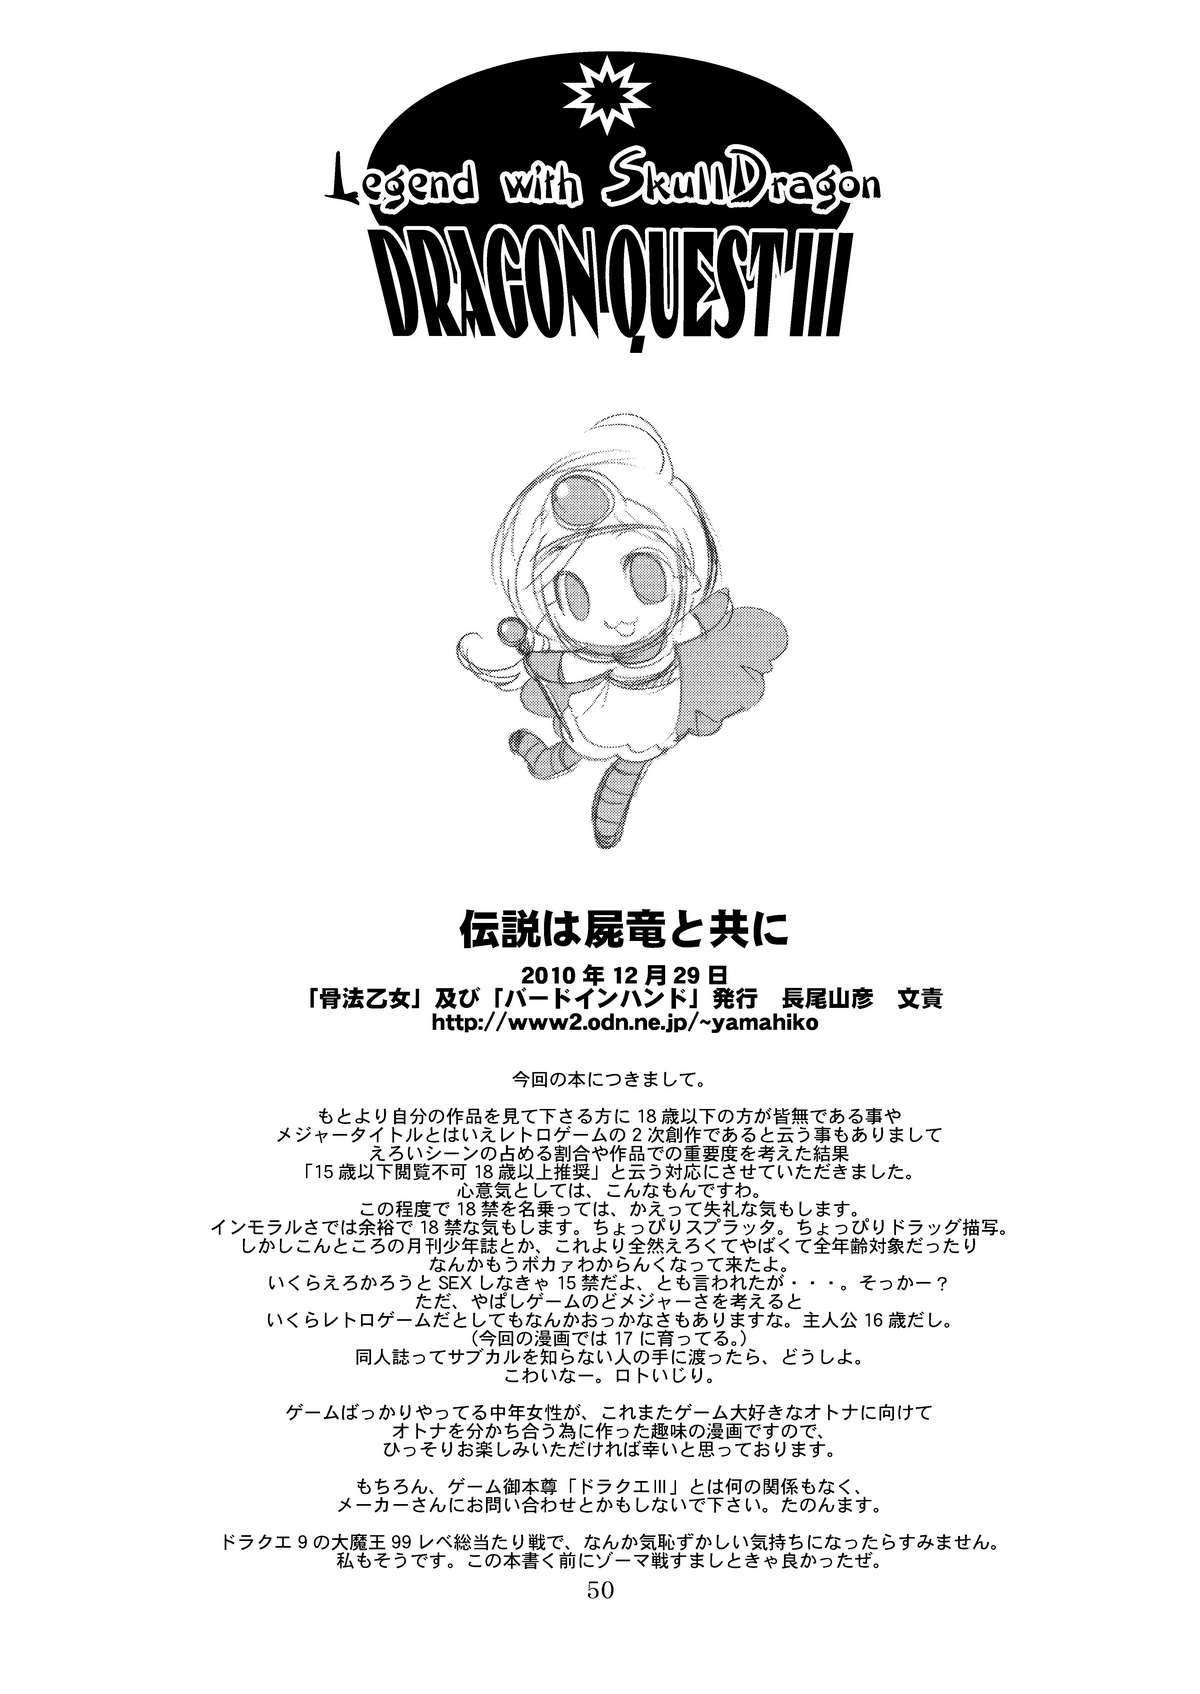 Densetsu wa Shikabaneryuu to Tomoni - Legend with SkullDragon 49